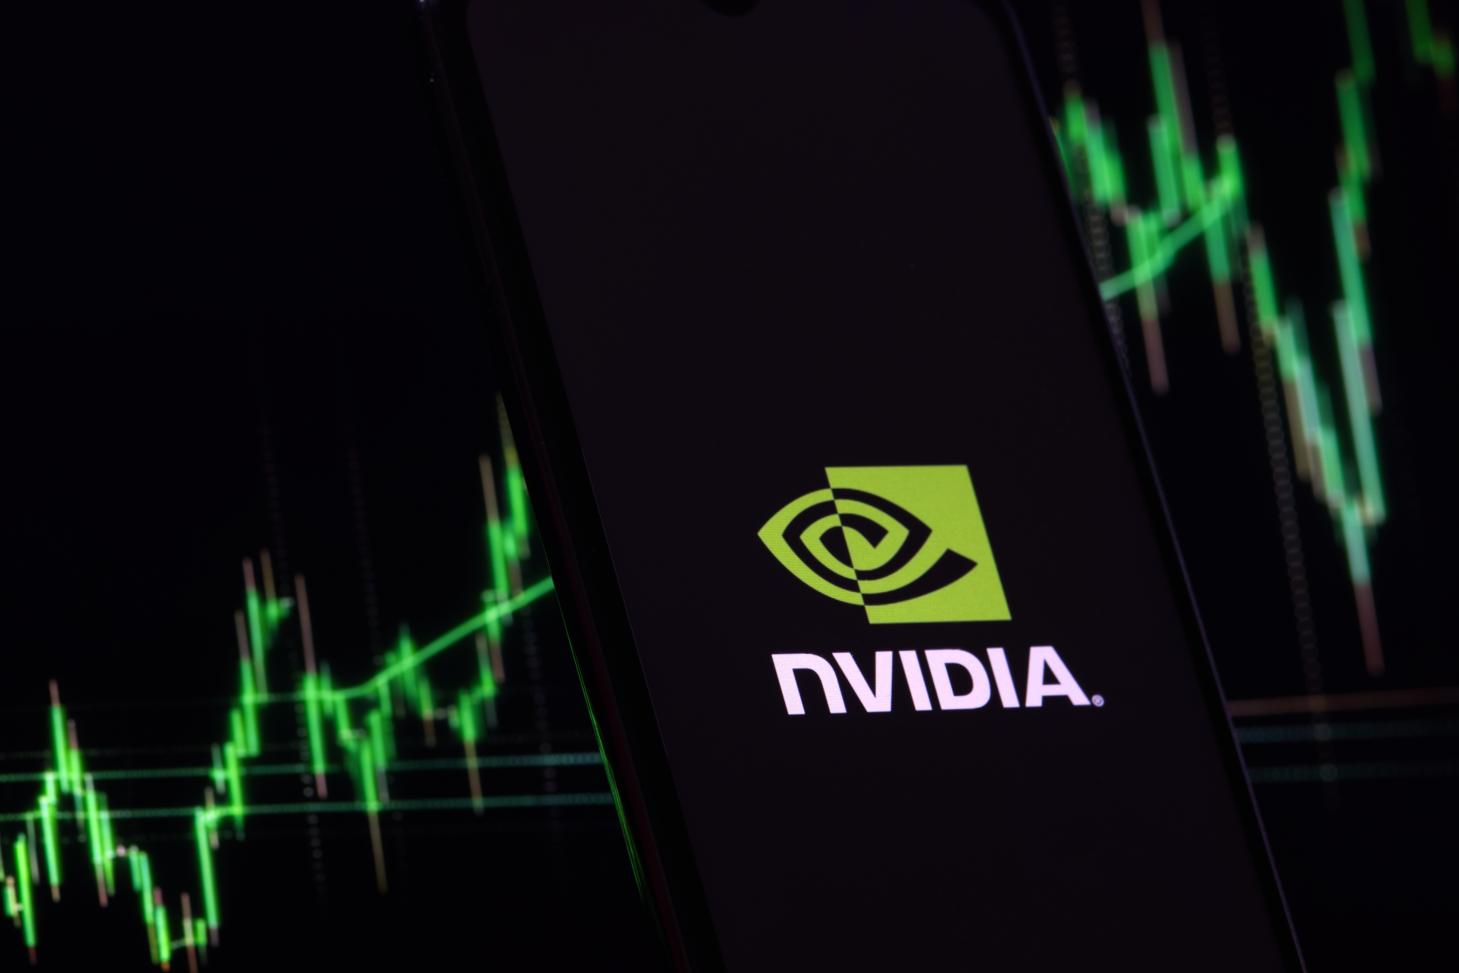 Nvidia stock chart and logo